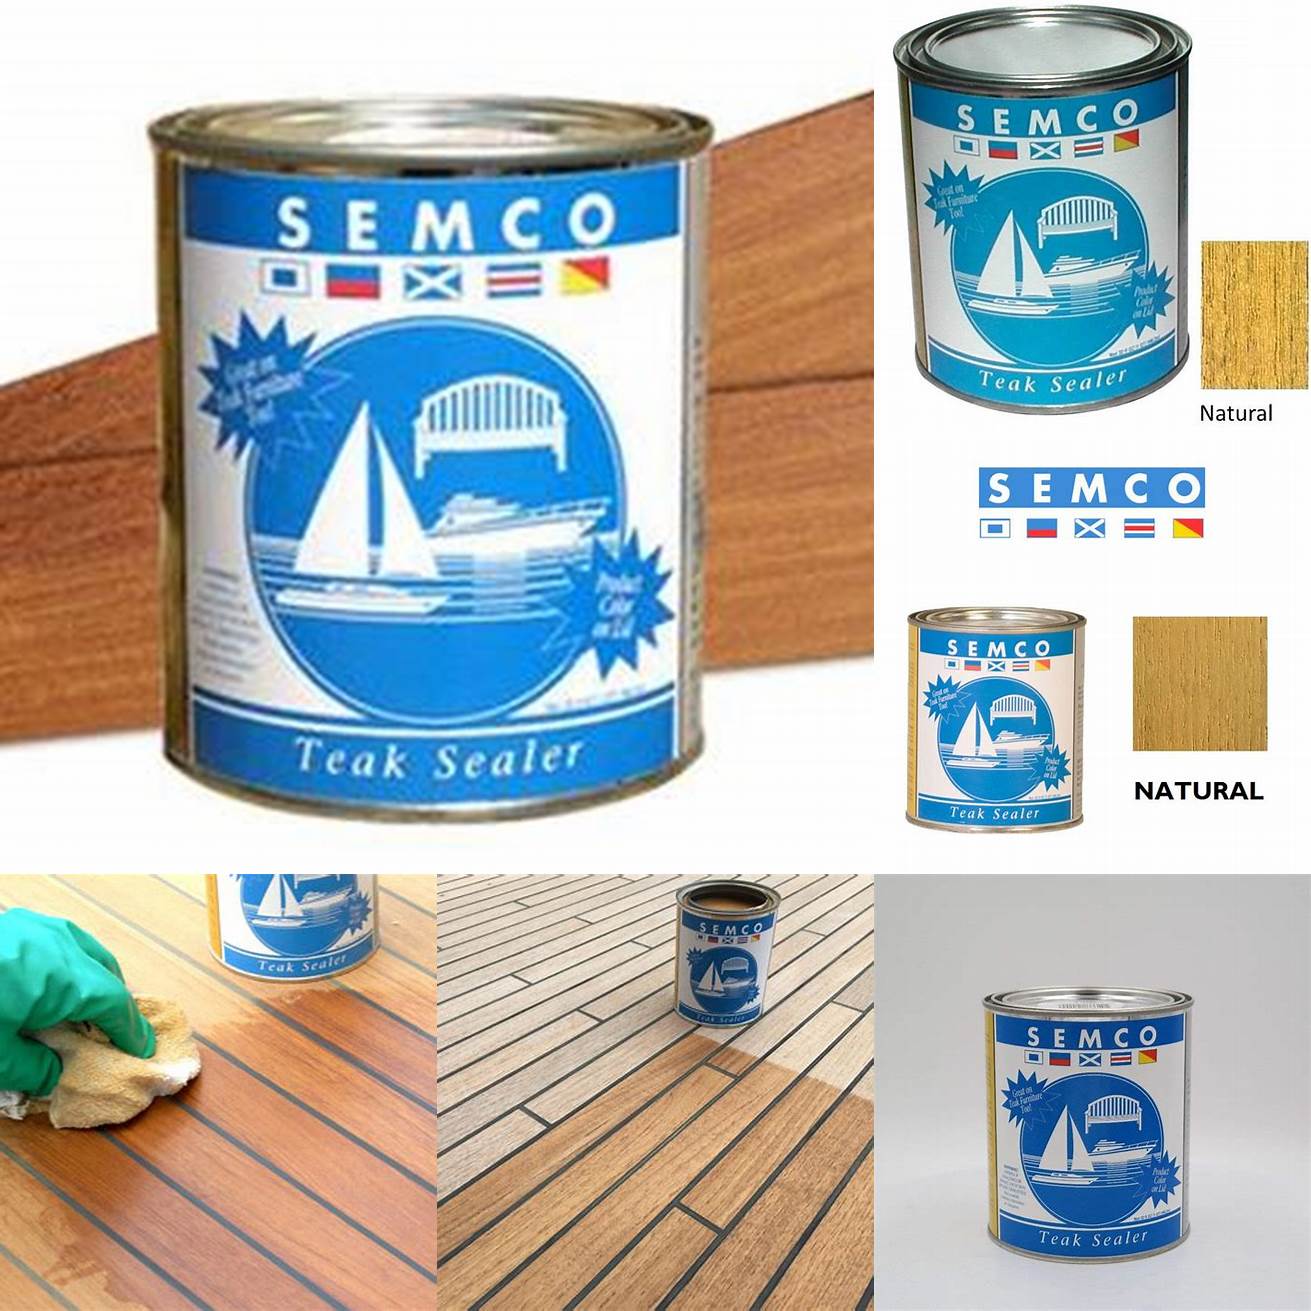 Instructions on Applying Semco or Total Boat Teak Sealer